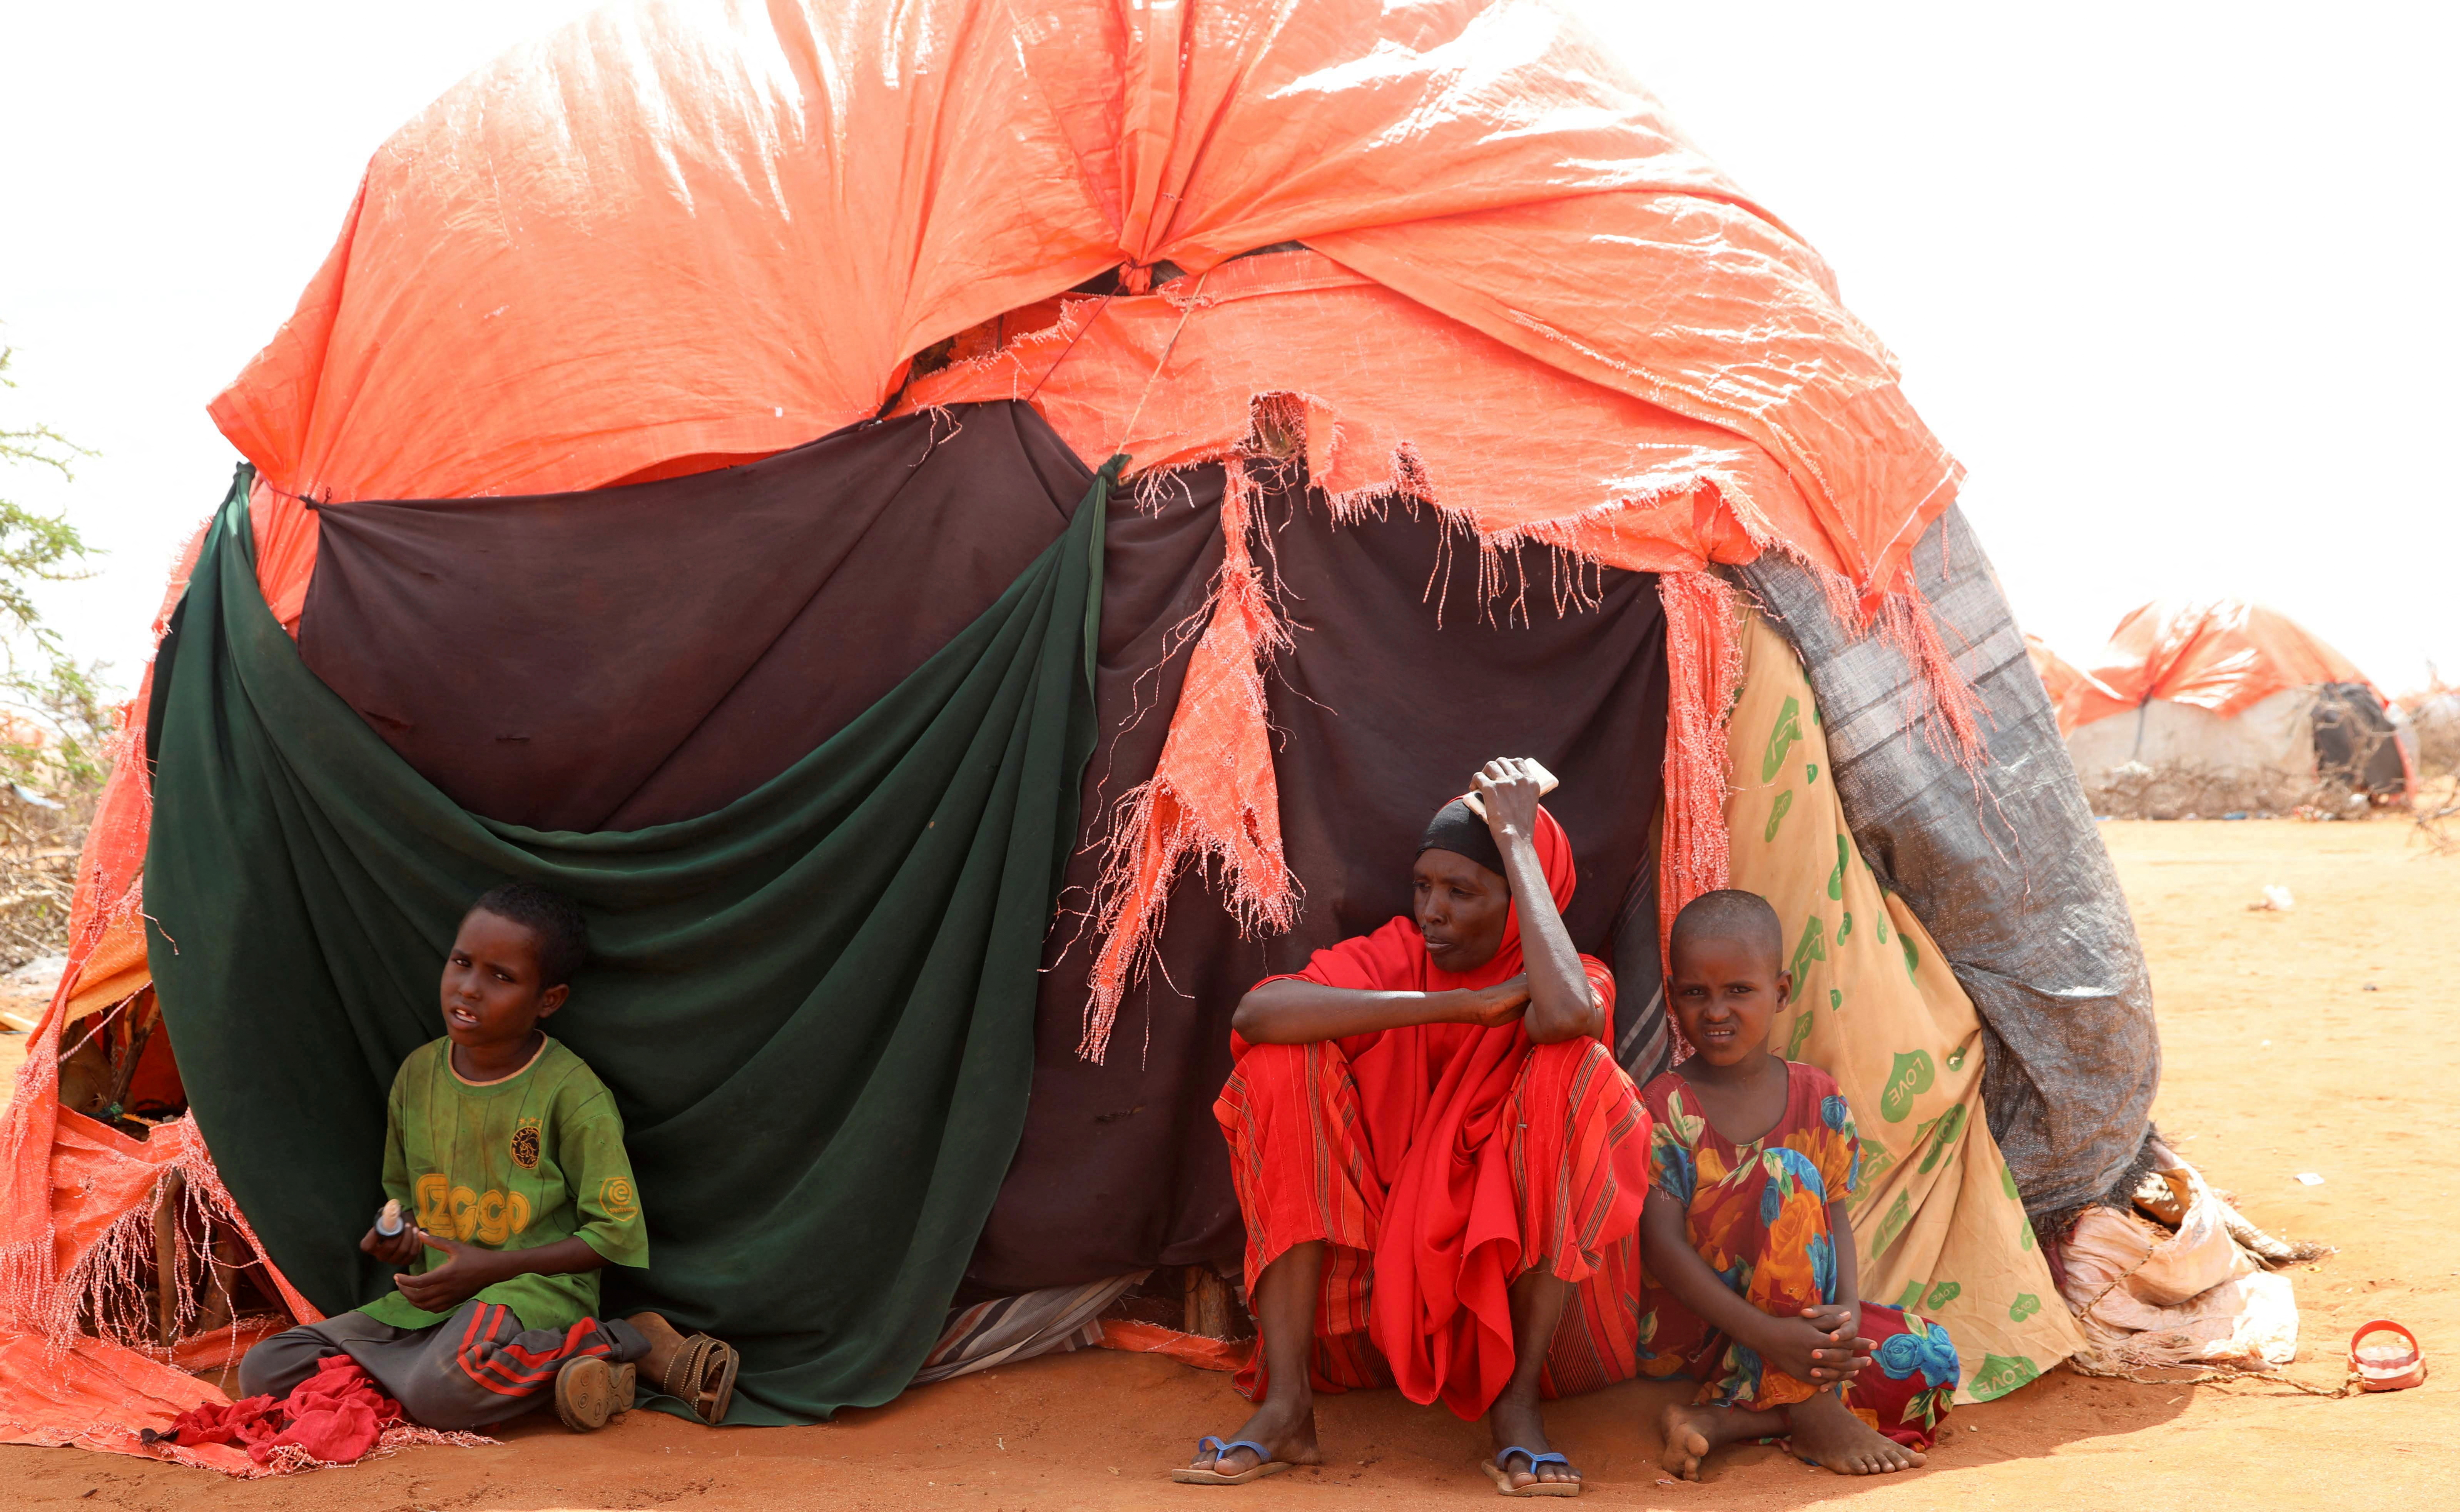 Civiles reunidos fuera de sus refugios improvisados en el campamento de Kaxareey para los desplazados internos en Dollow, región de Gedo de Somalia (Reuters)